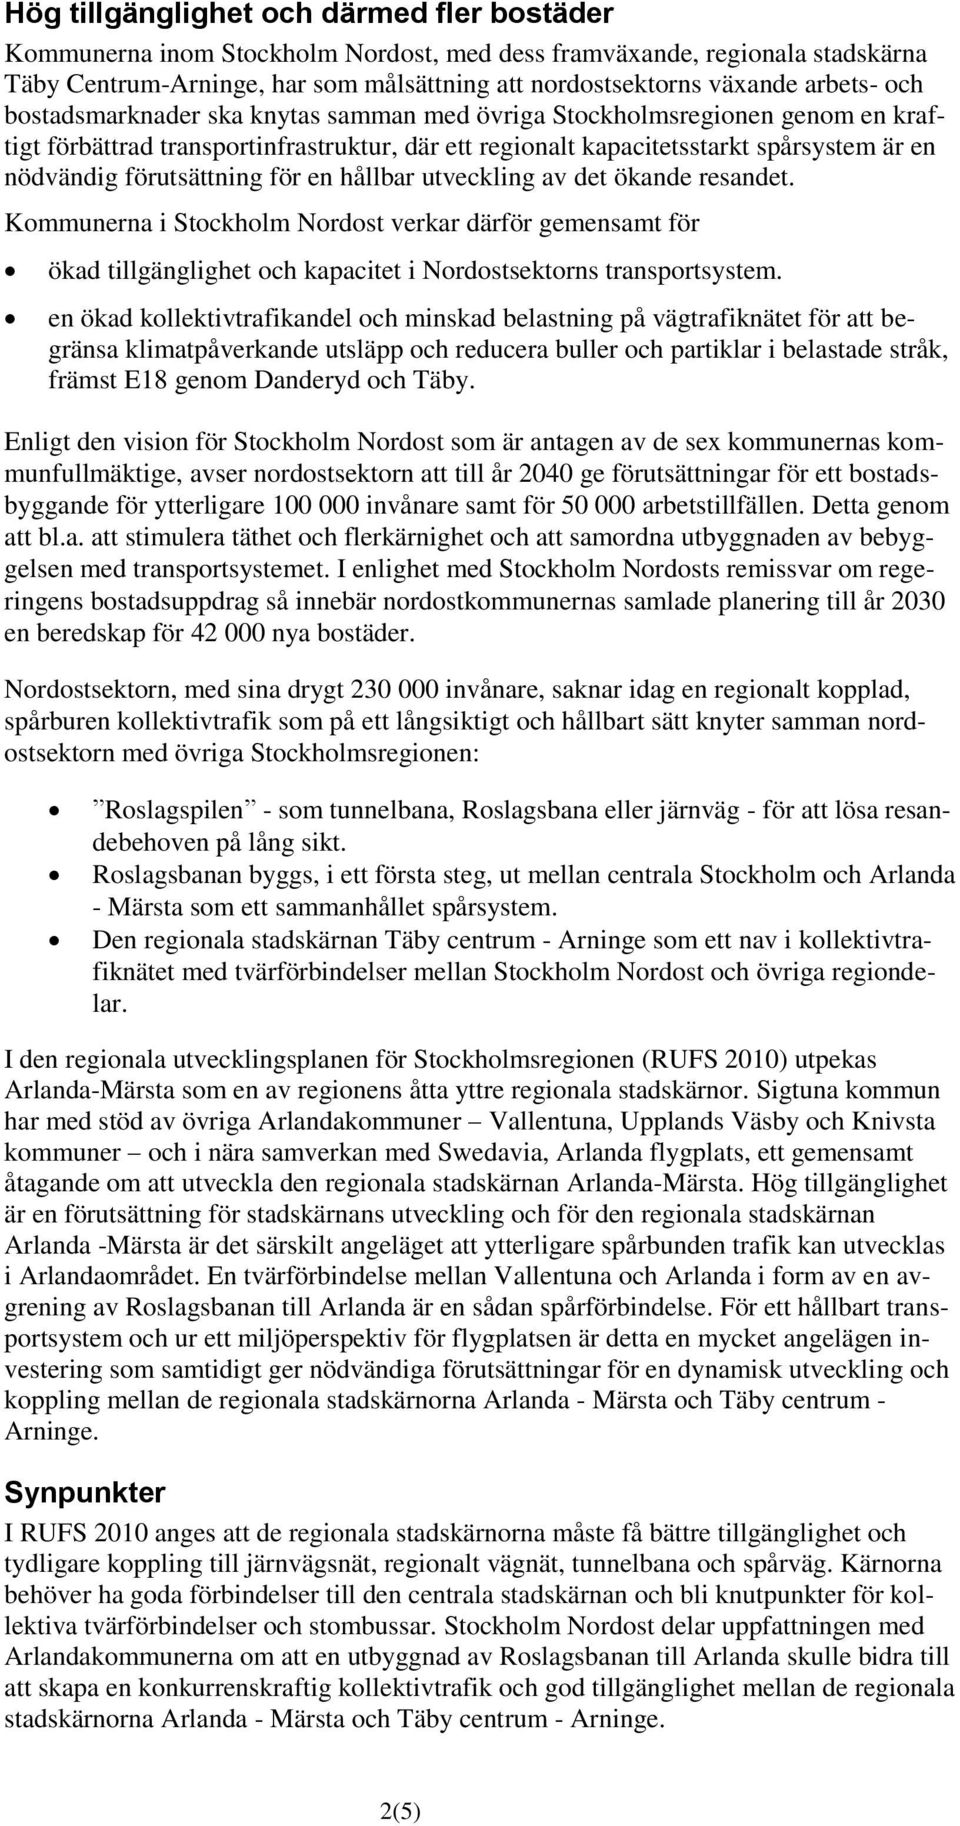 för en hållbar utveckling av det ökande resandet. Kommunerna i Stockholm Nordost verkar därför gemensamt för ökad tillgänglighet och kapacitet i Nordostsektorns transportsystem.